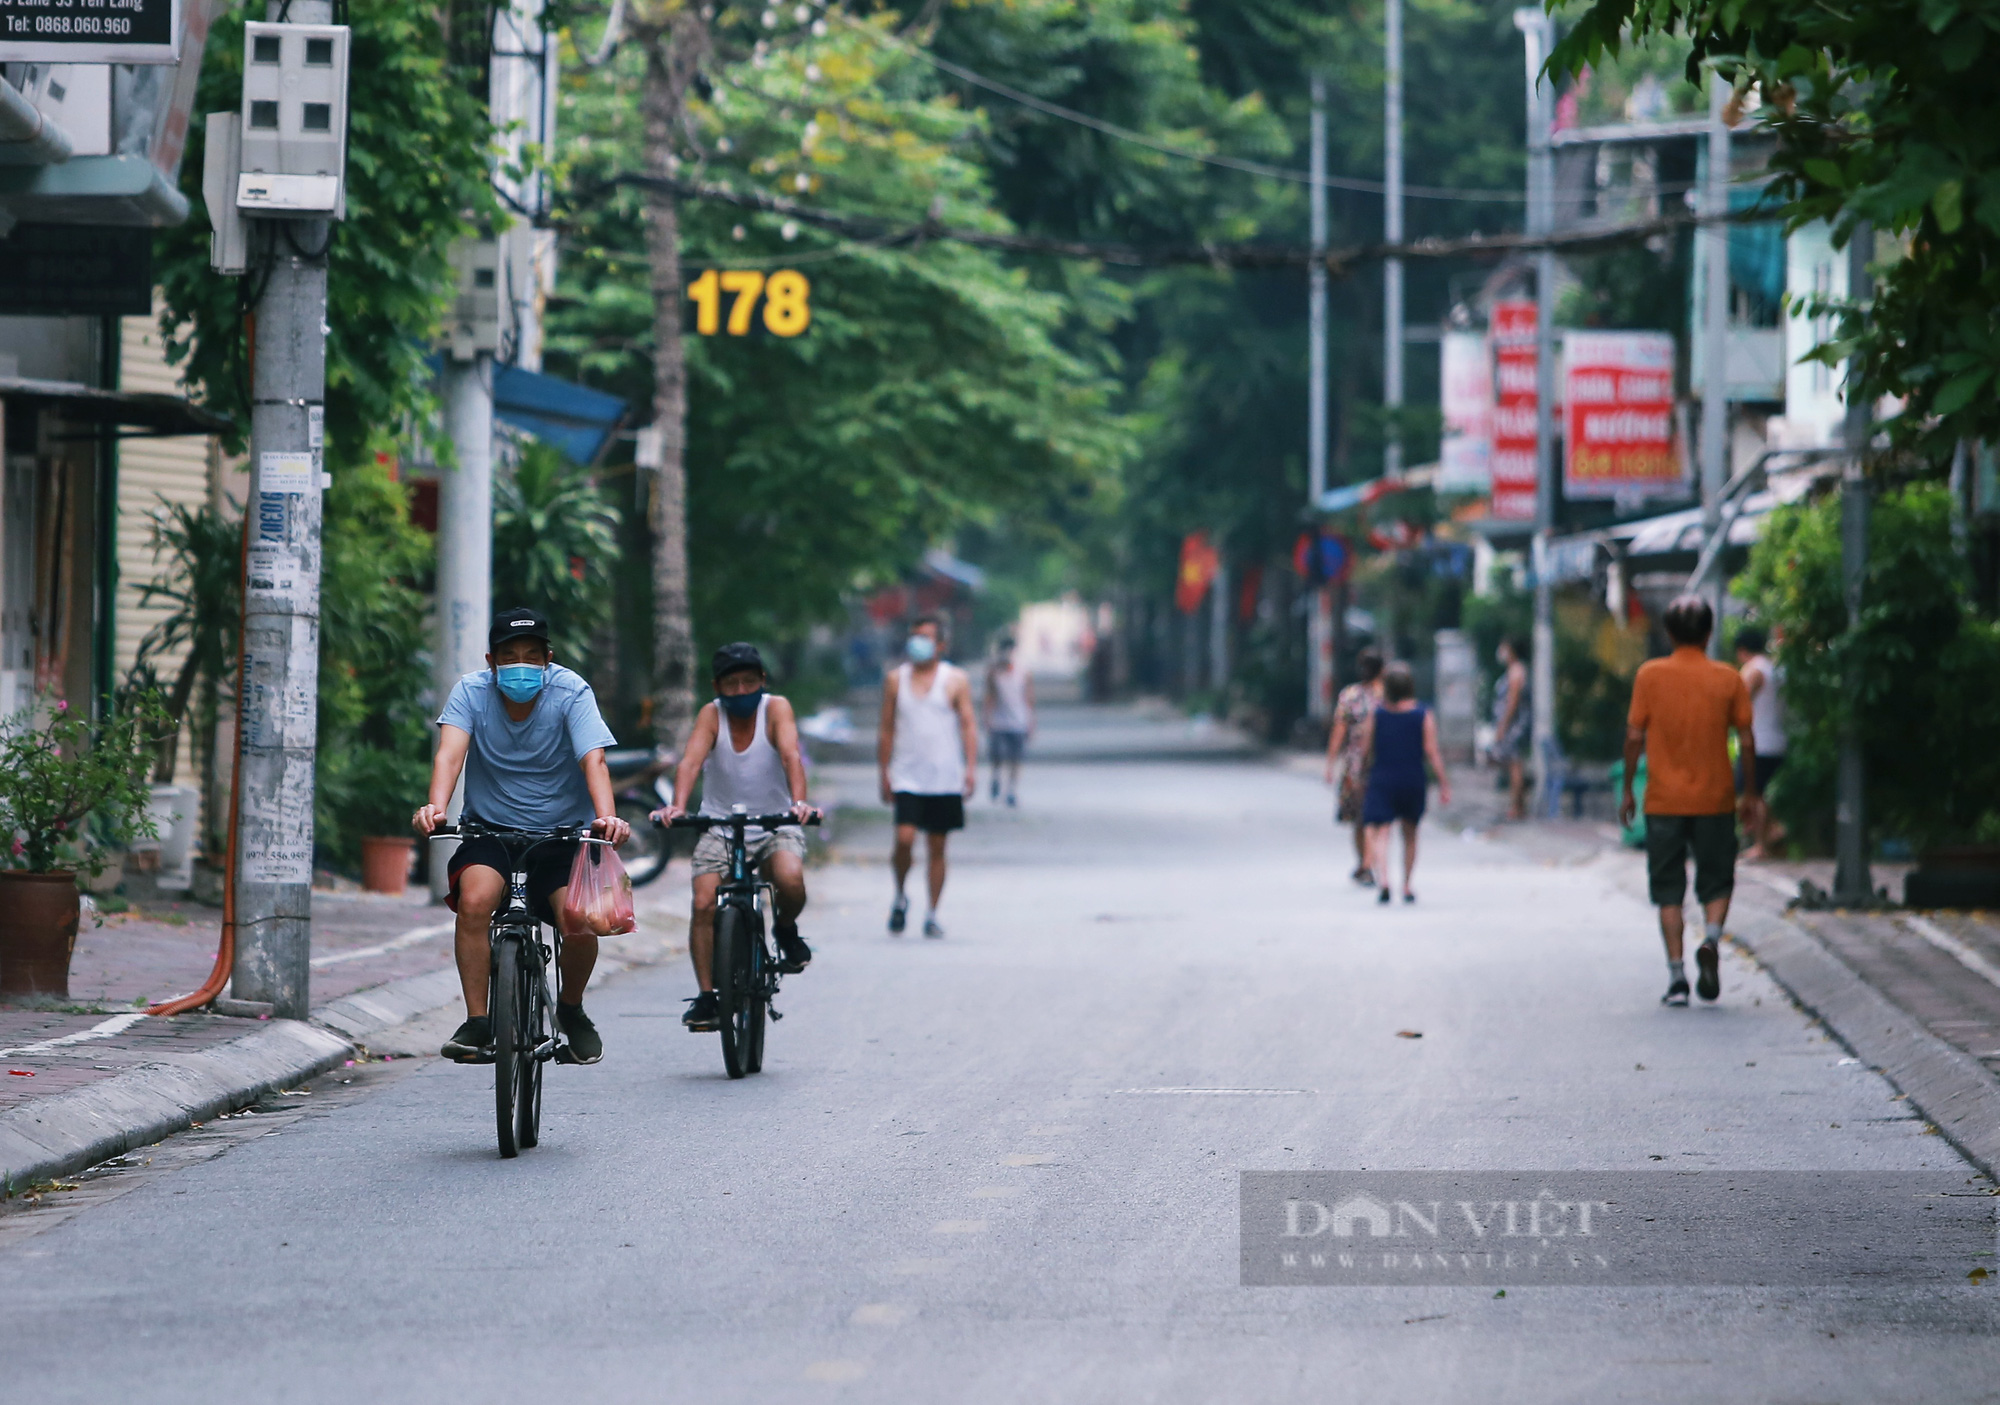 Hà Nội: Nhiều người dân vẫn lơ là chống dịch, thản nhiên luyện tập thể dục ngoài đường phố - Ảnh 1.